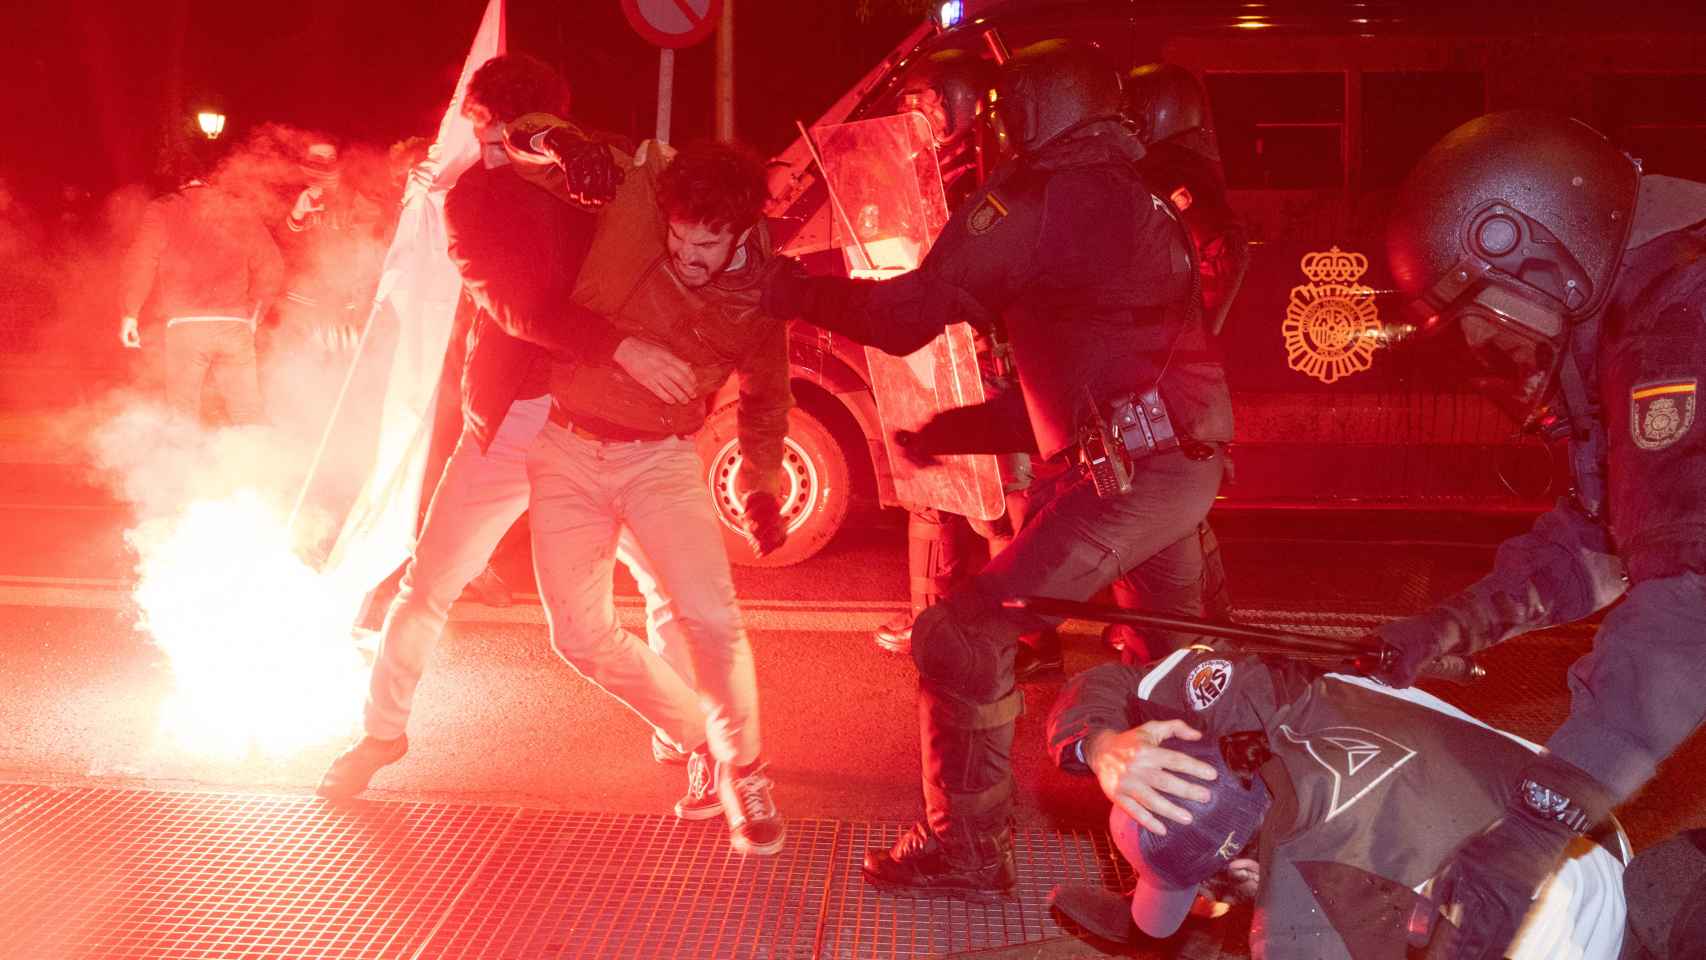 Policías y manifestantes se enfrentan enfrente de la sede del PSOE en la calle Ferraz.